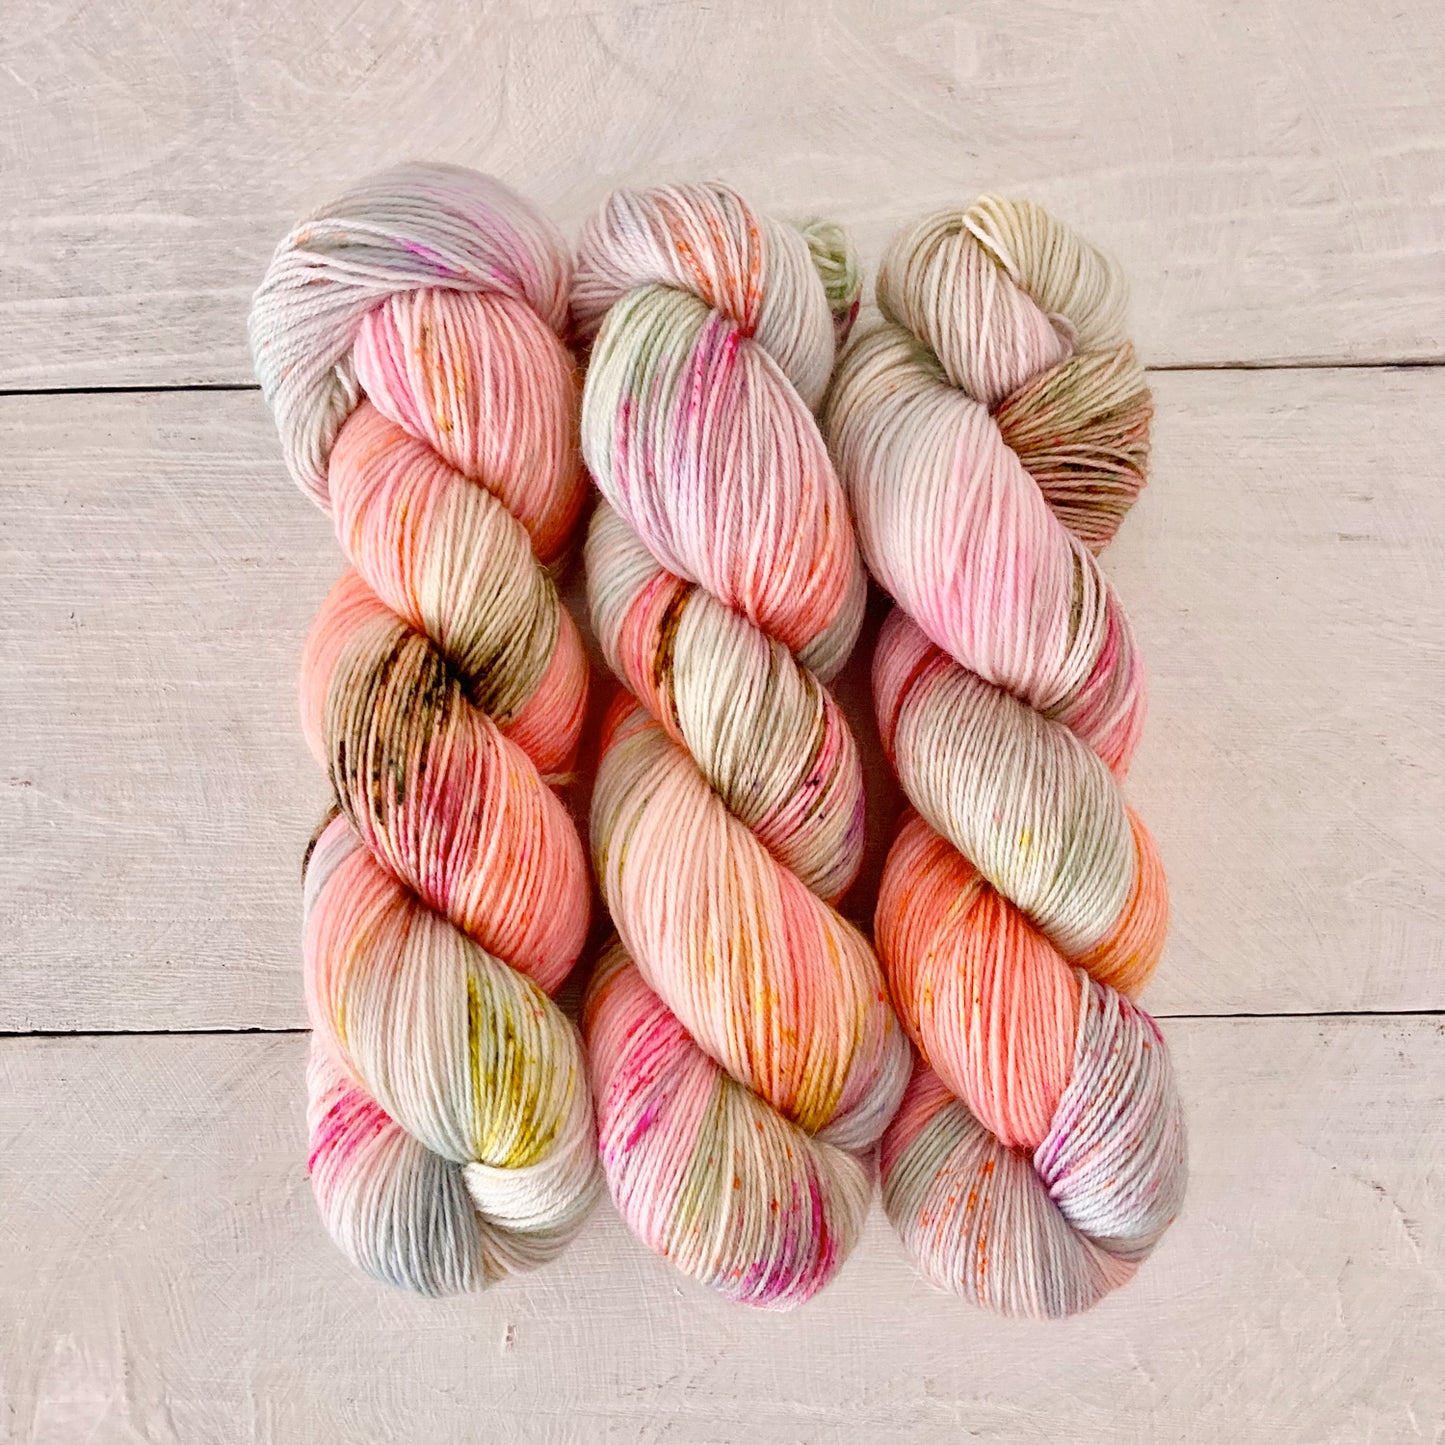 Hand-dyed yarn No.241 sock yarn "L'enfant et les sortilèges"